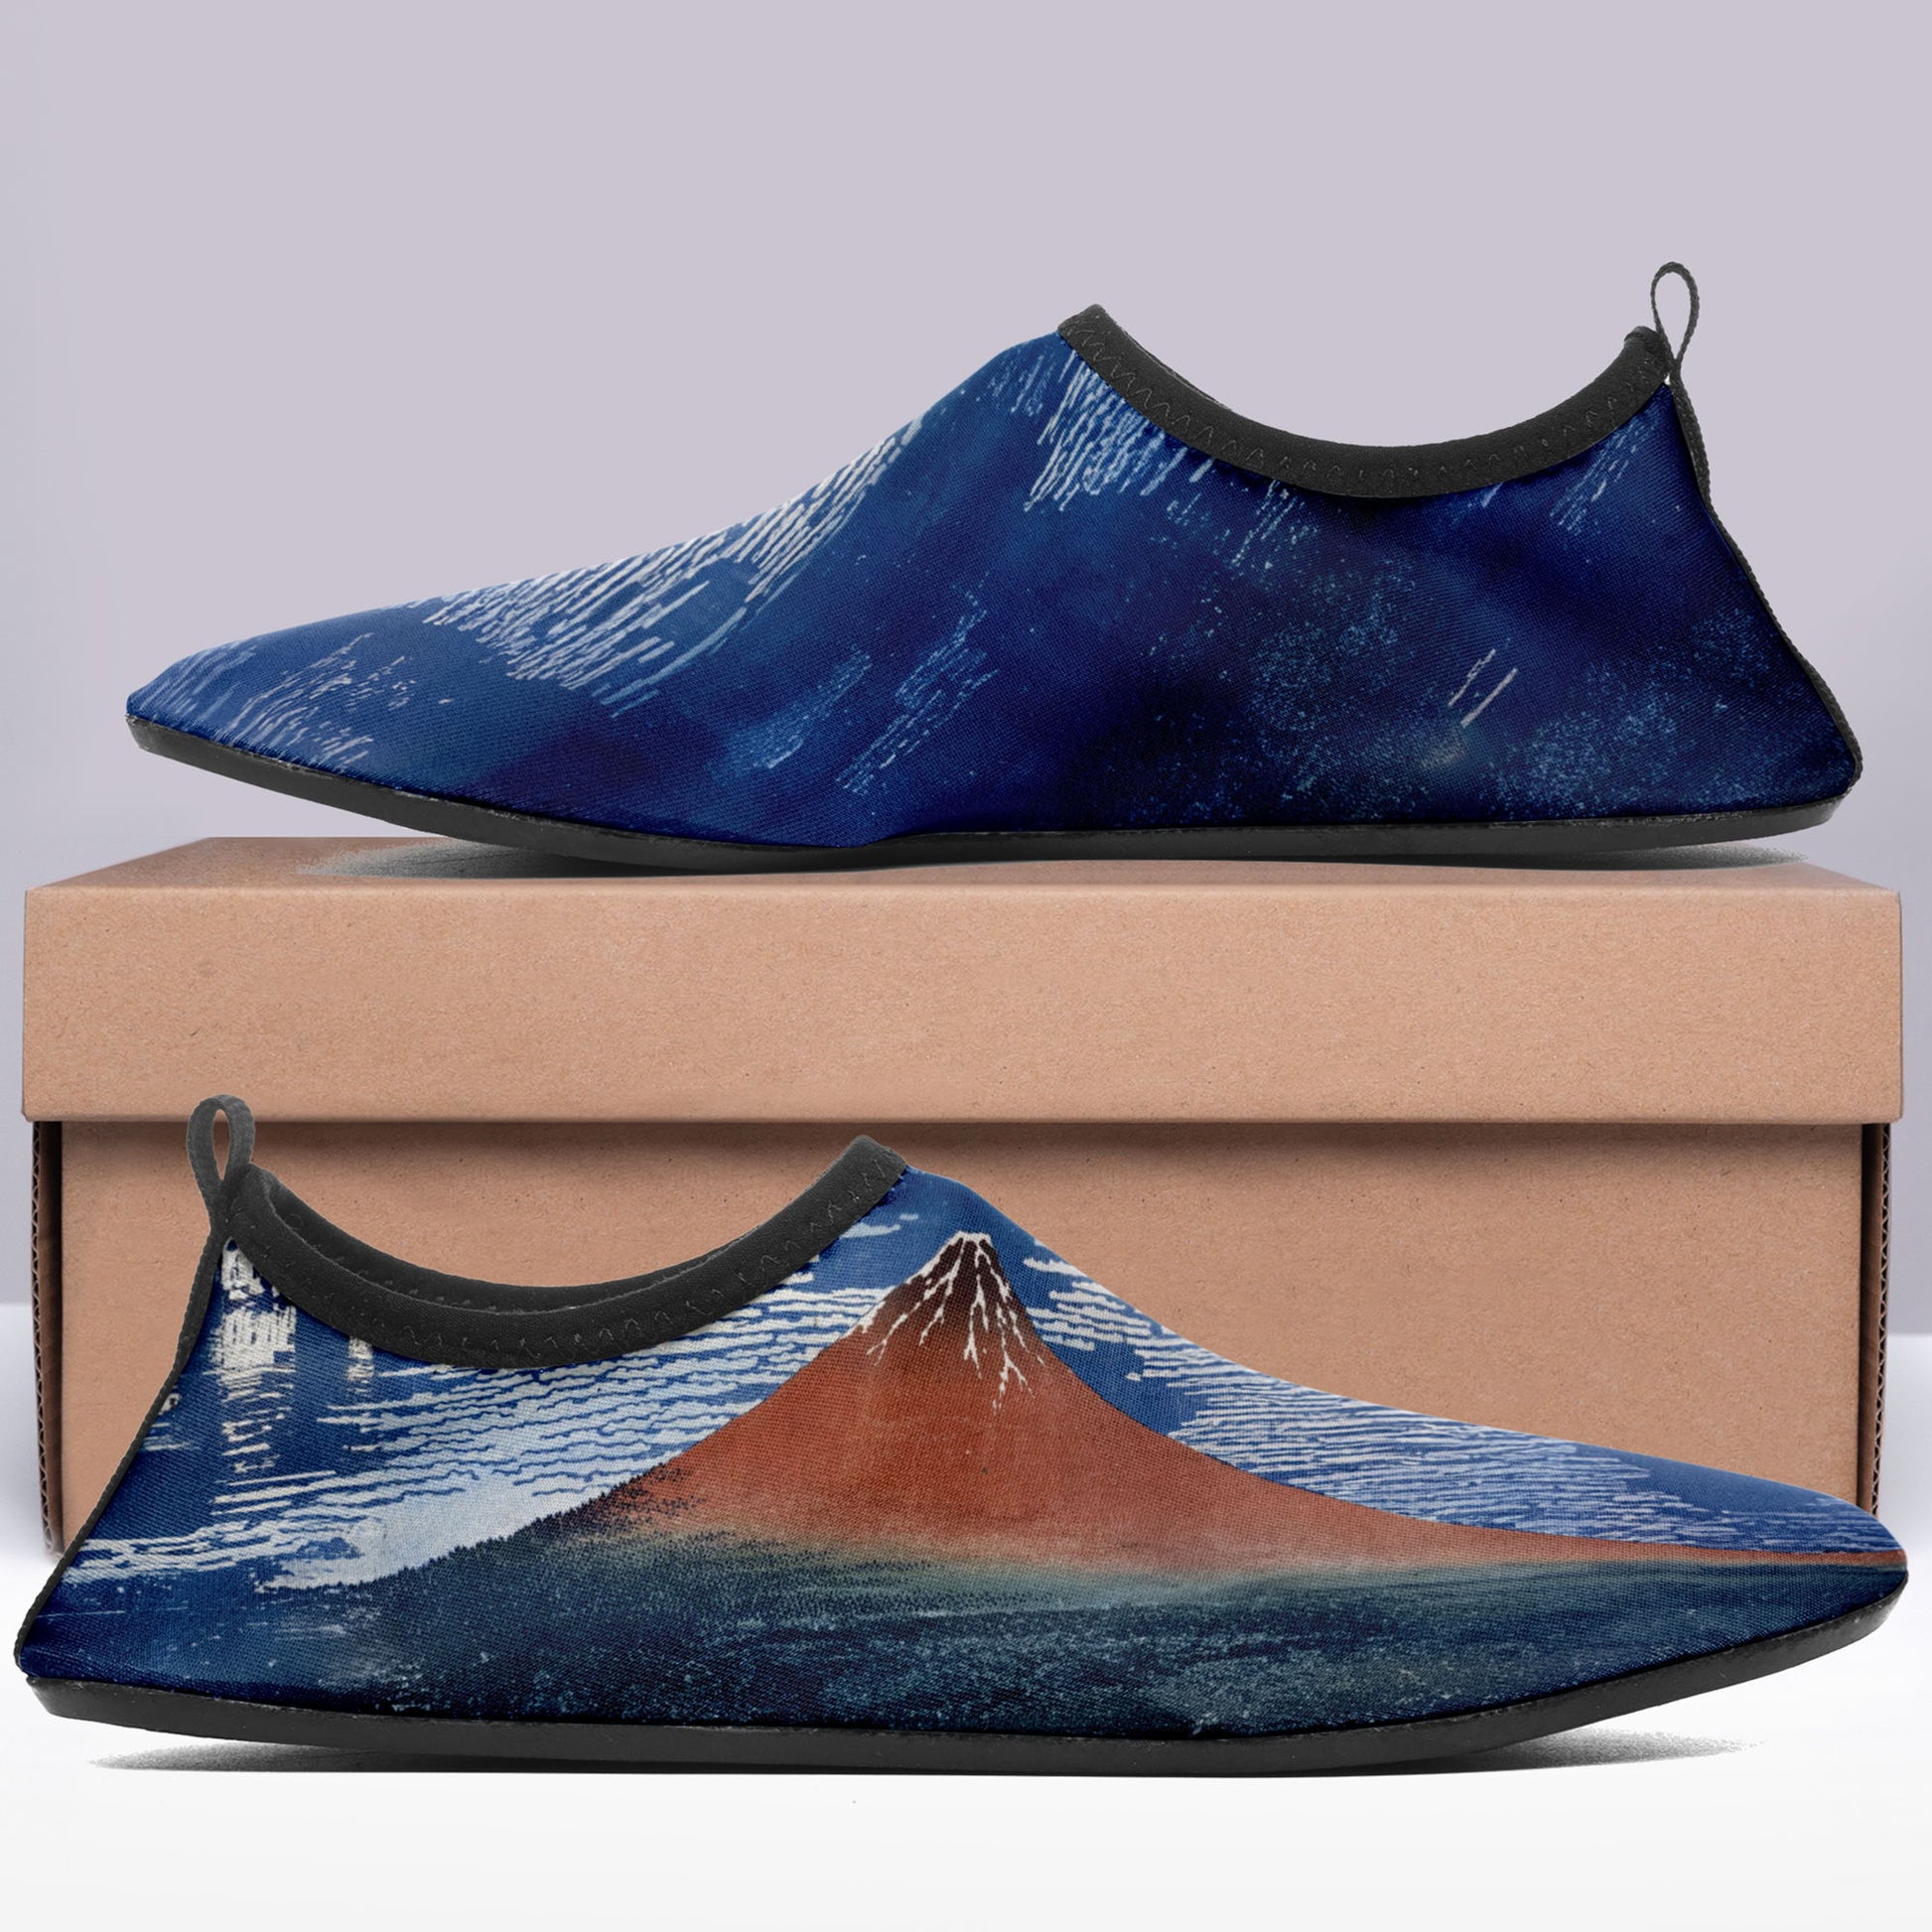 customized printed aqua shoes 1902: ukiyo-e hokusai's thirty six views of mount red fuji beach wading shoes 7